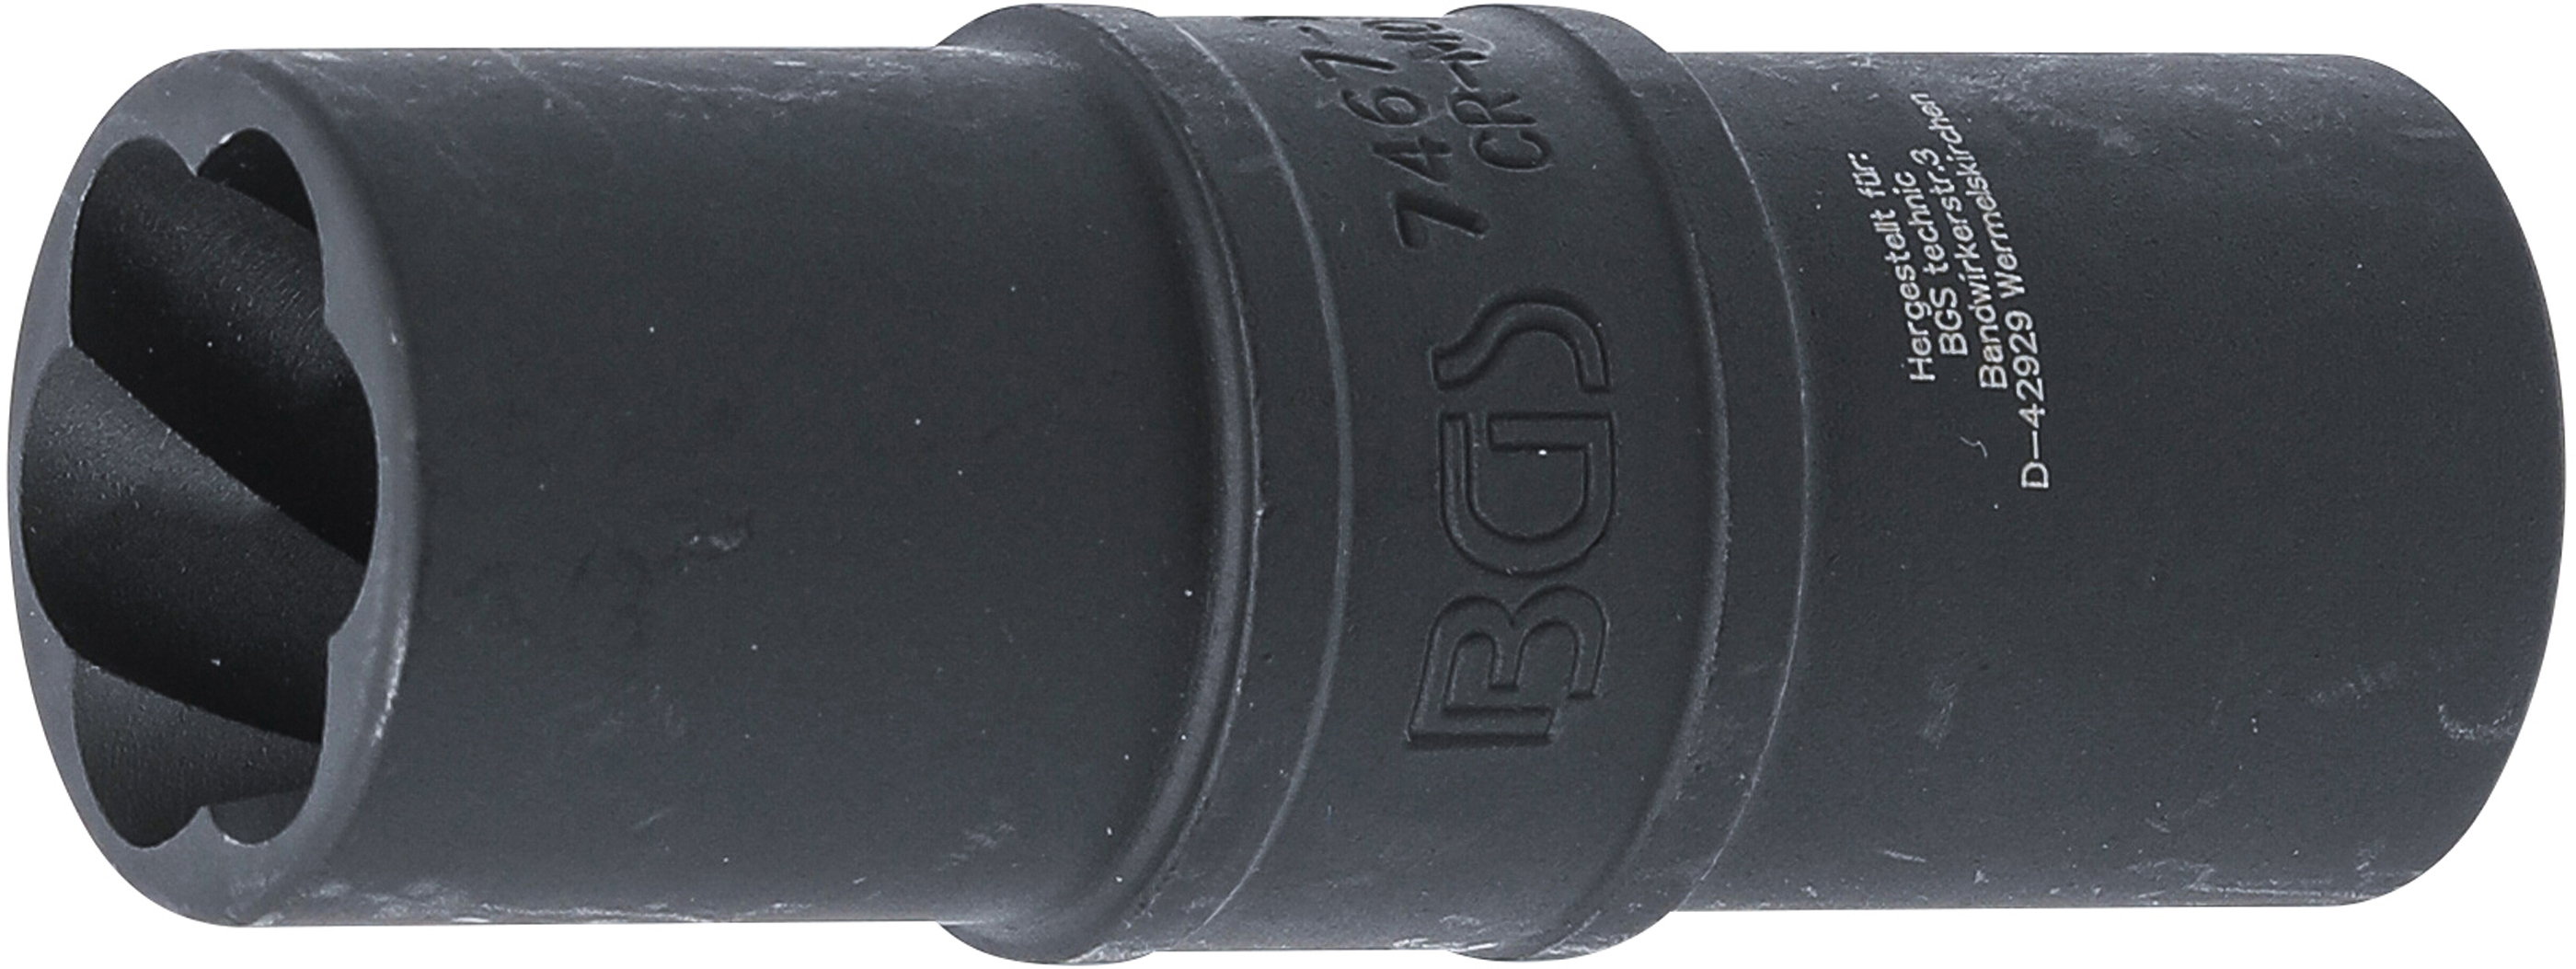 BGS Kraft-Spezial-Schraubenausdreh-Wendeeinsatz 19 mm | 12,5 mm (1/2")